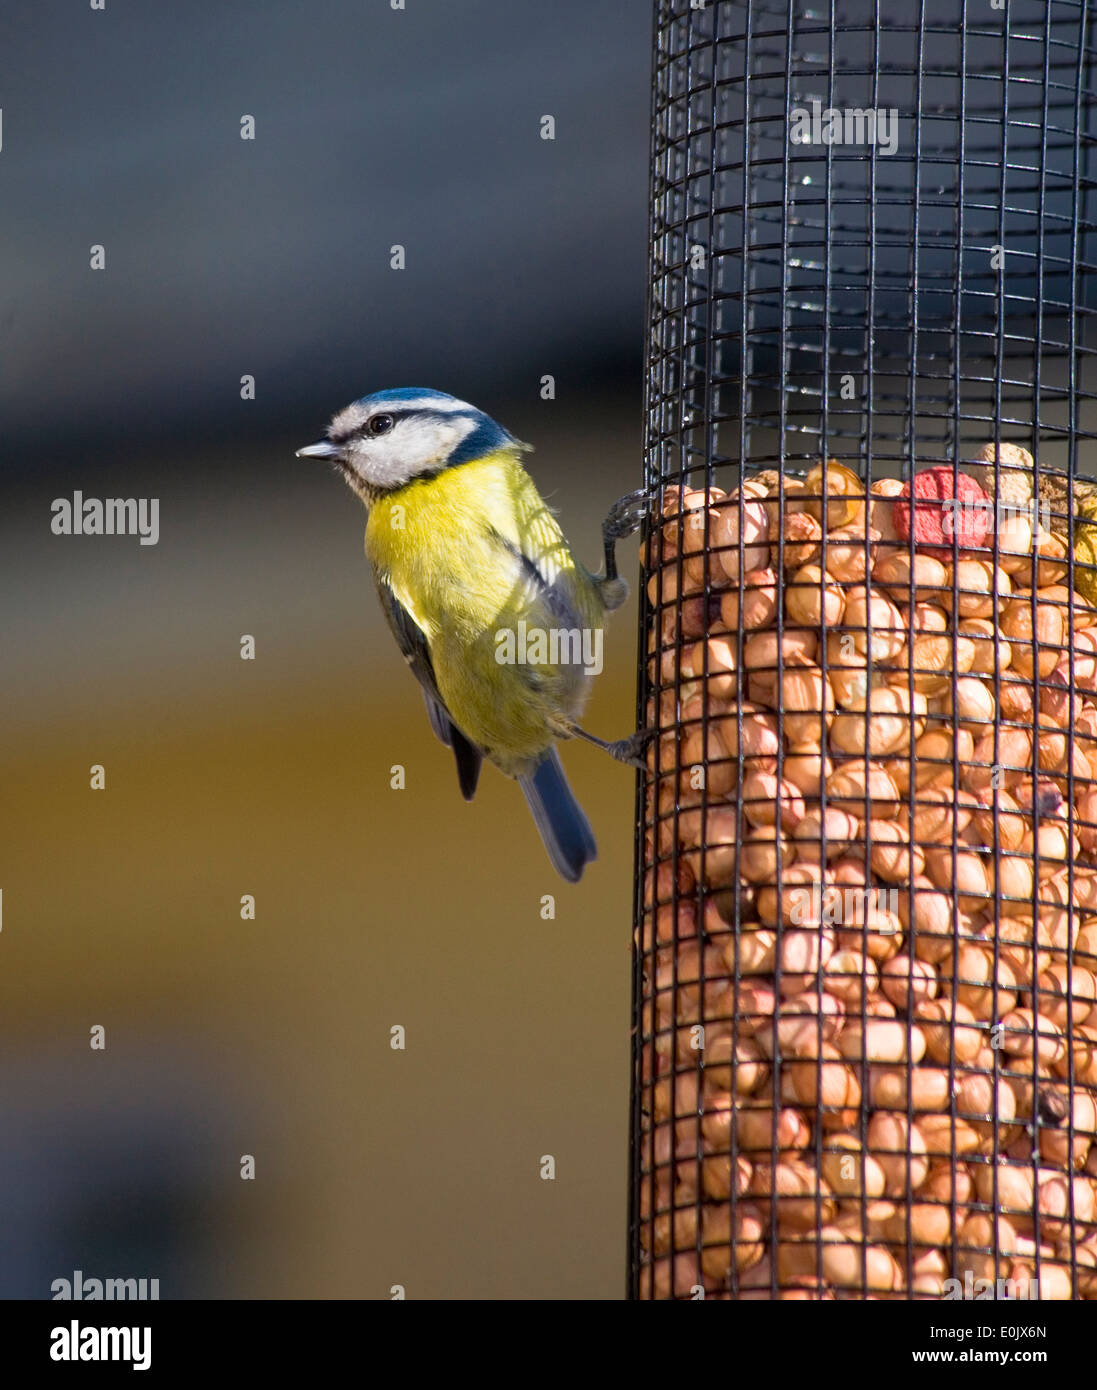 Bluetit on bird feeder Ireland Stock Photo